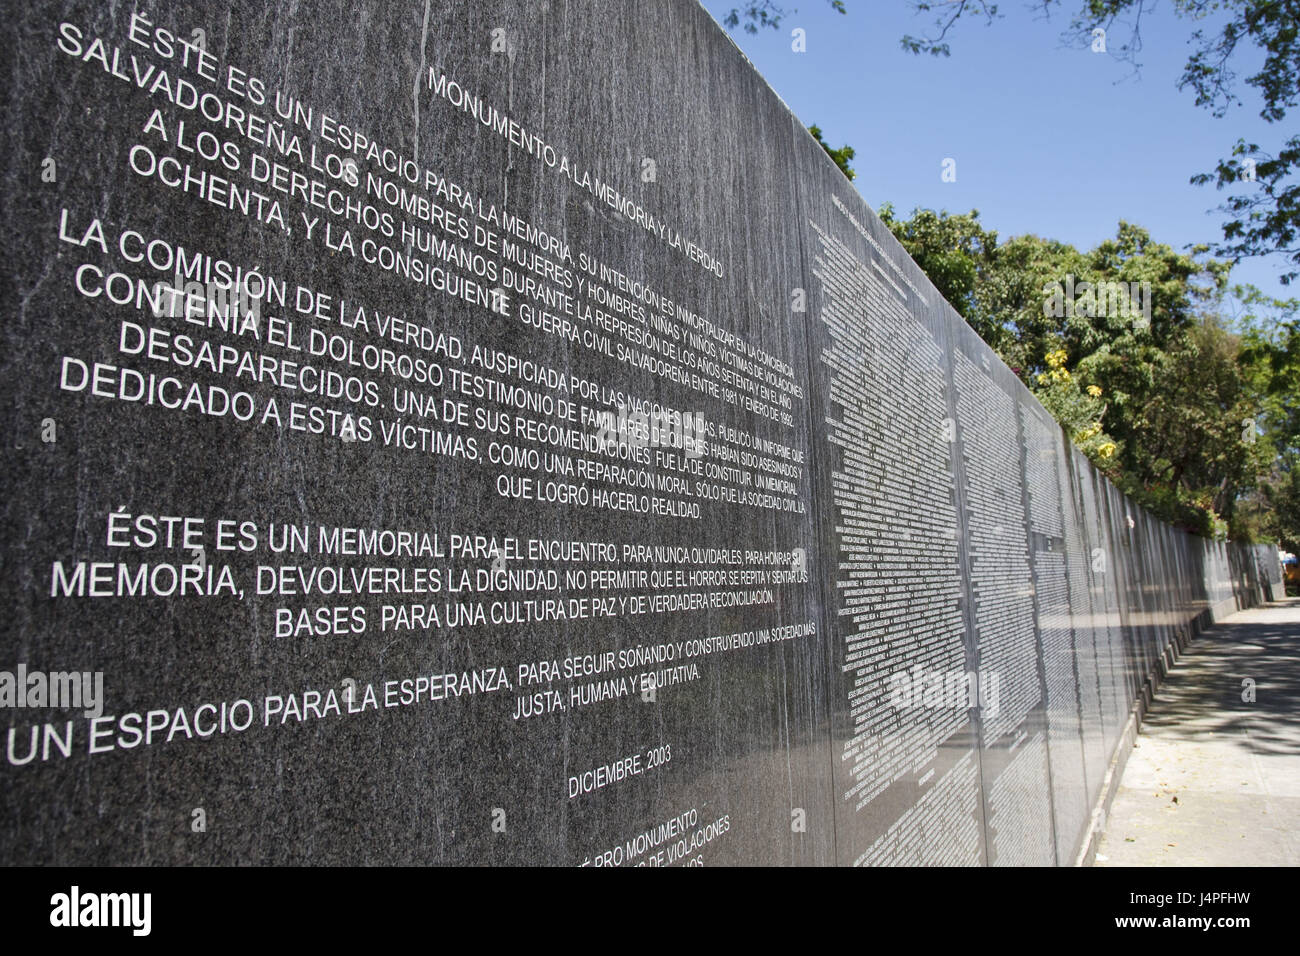 El Salvador, San Salvador, Monumento a la memoria Y LA VERDAD, Foto Stock